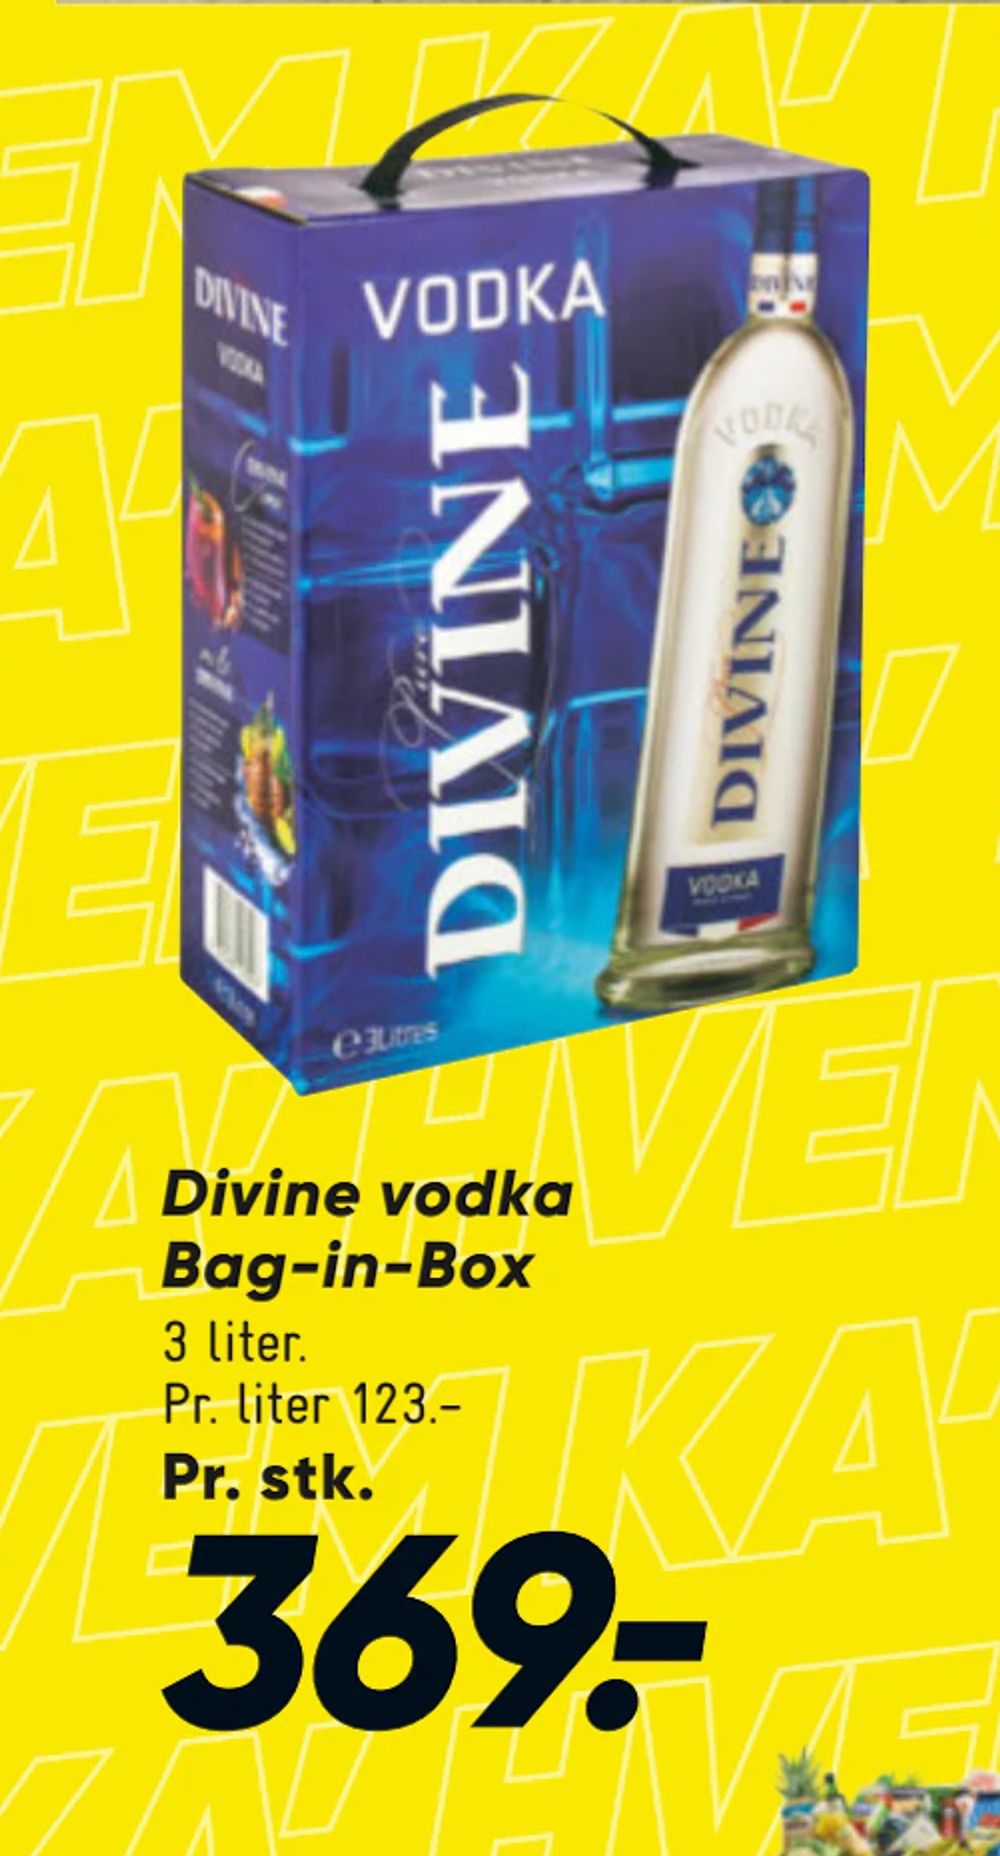 Tilbud på Divine vodka Bag-in-Box fra Bilka til 369 kr.